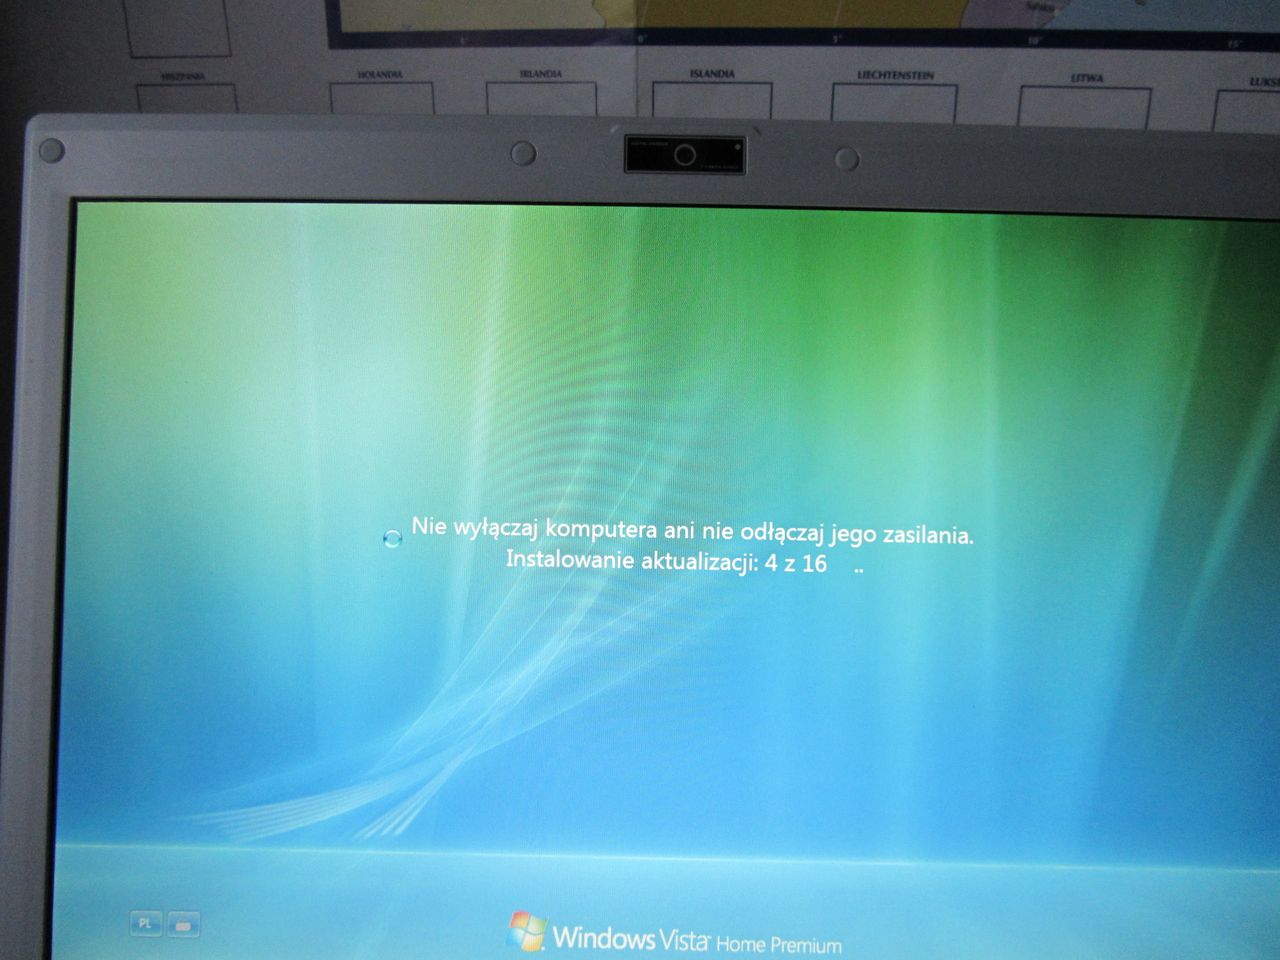 Windows Vista — system, na który nikt nie był gotowy